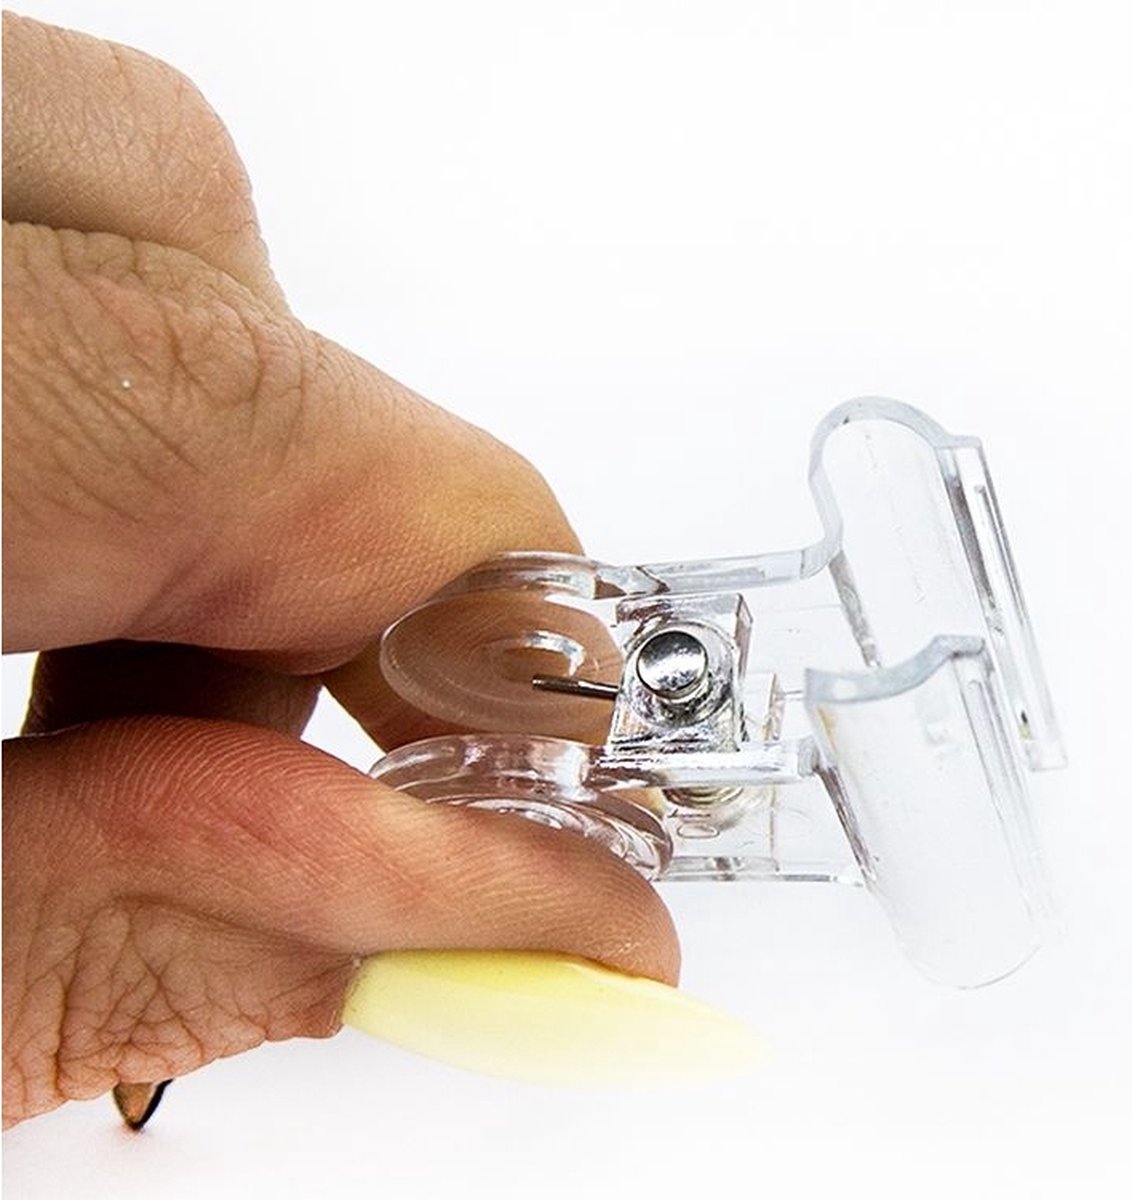 Modena Nails Nagel Clip Voor Het Ondersteunen Van Siliconen Nagel Tips  online kopen?